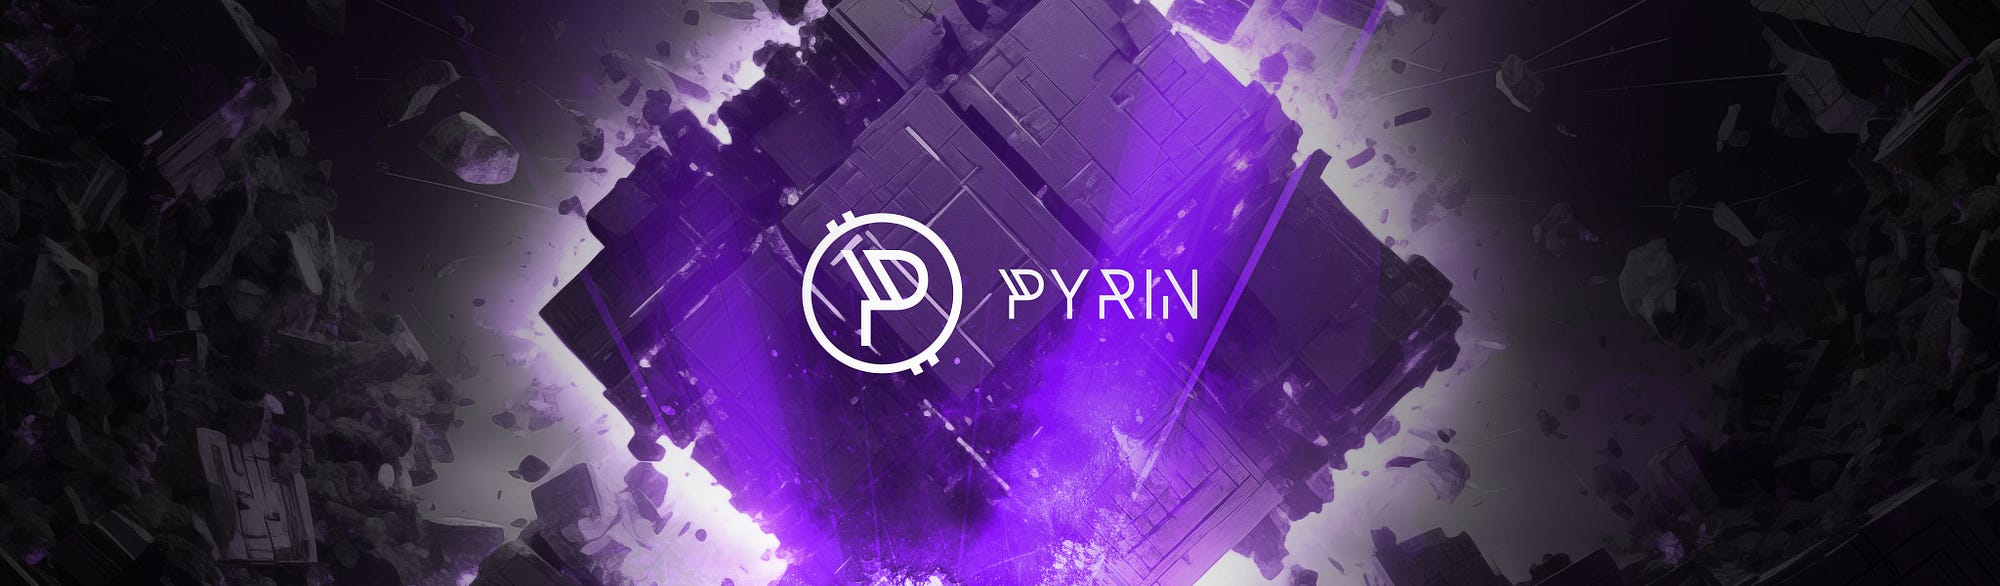 PYRIN (pyi)